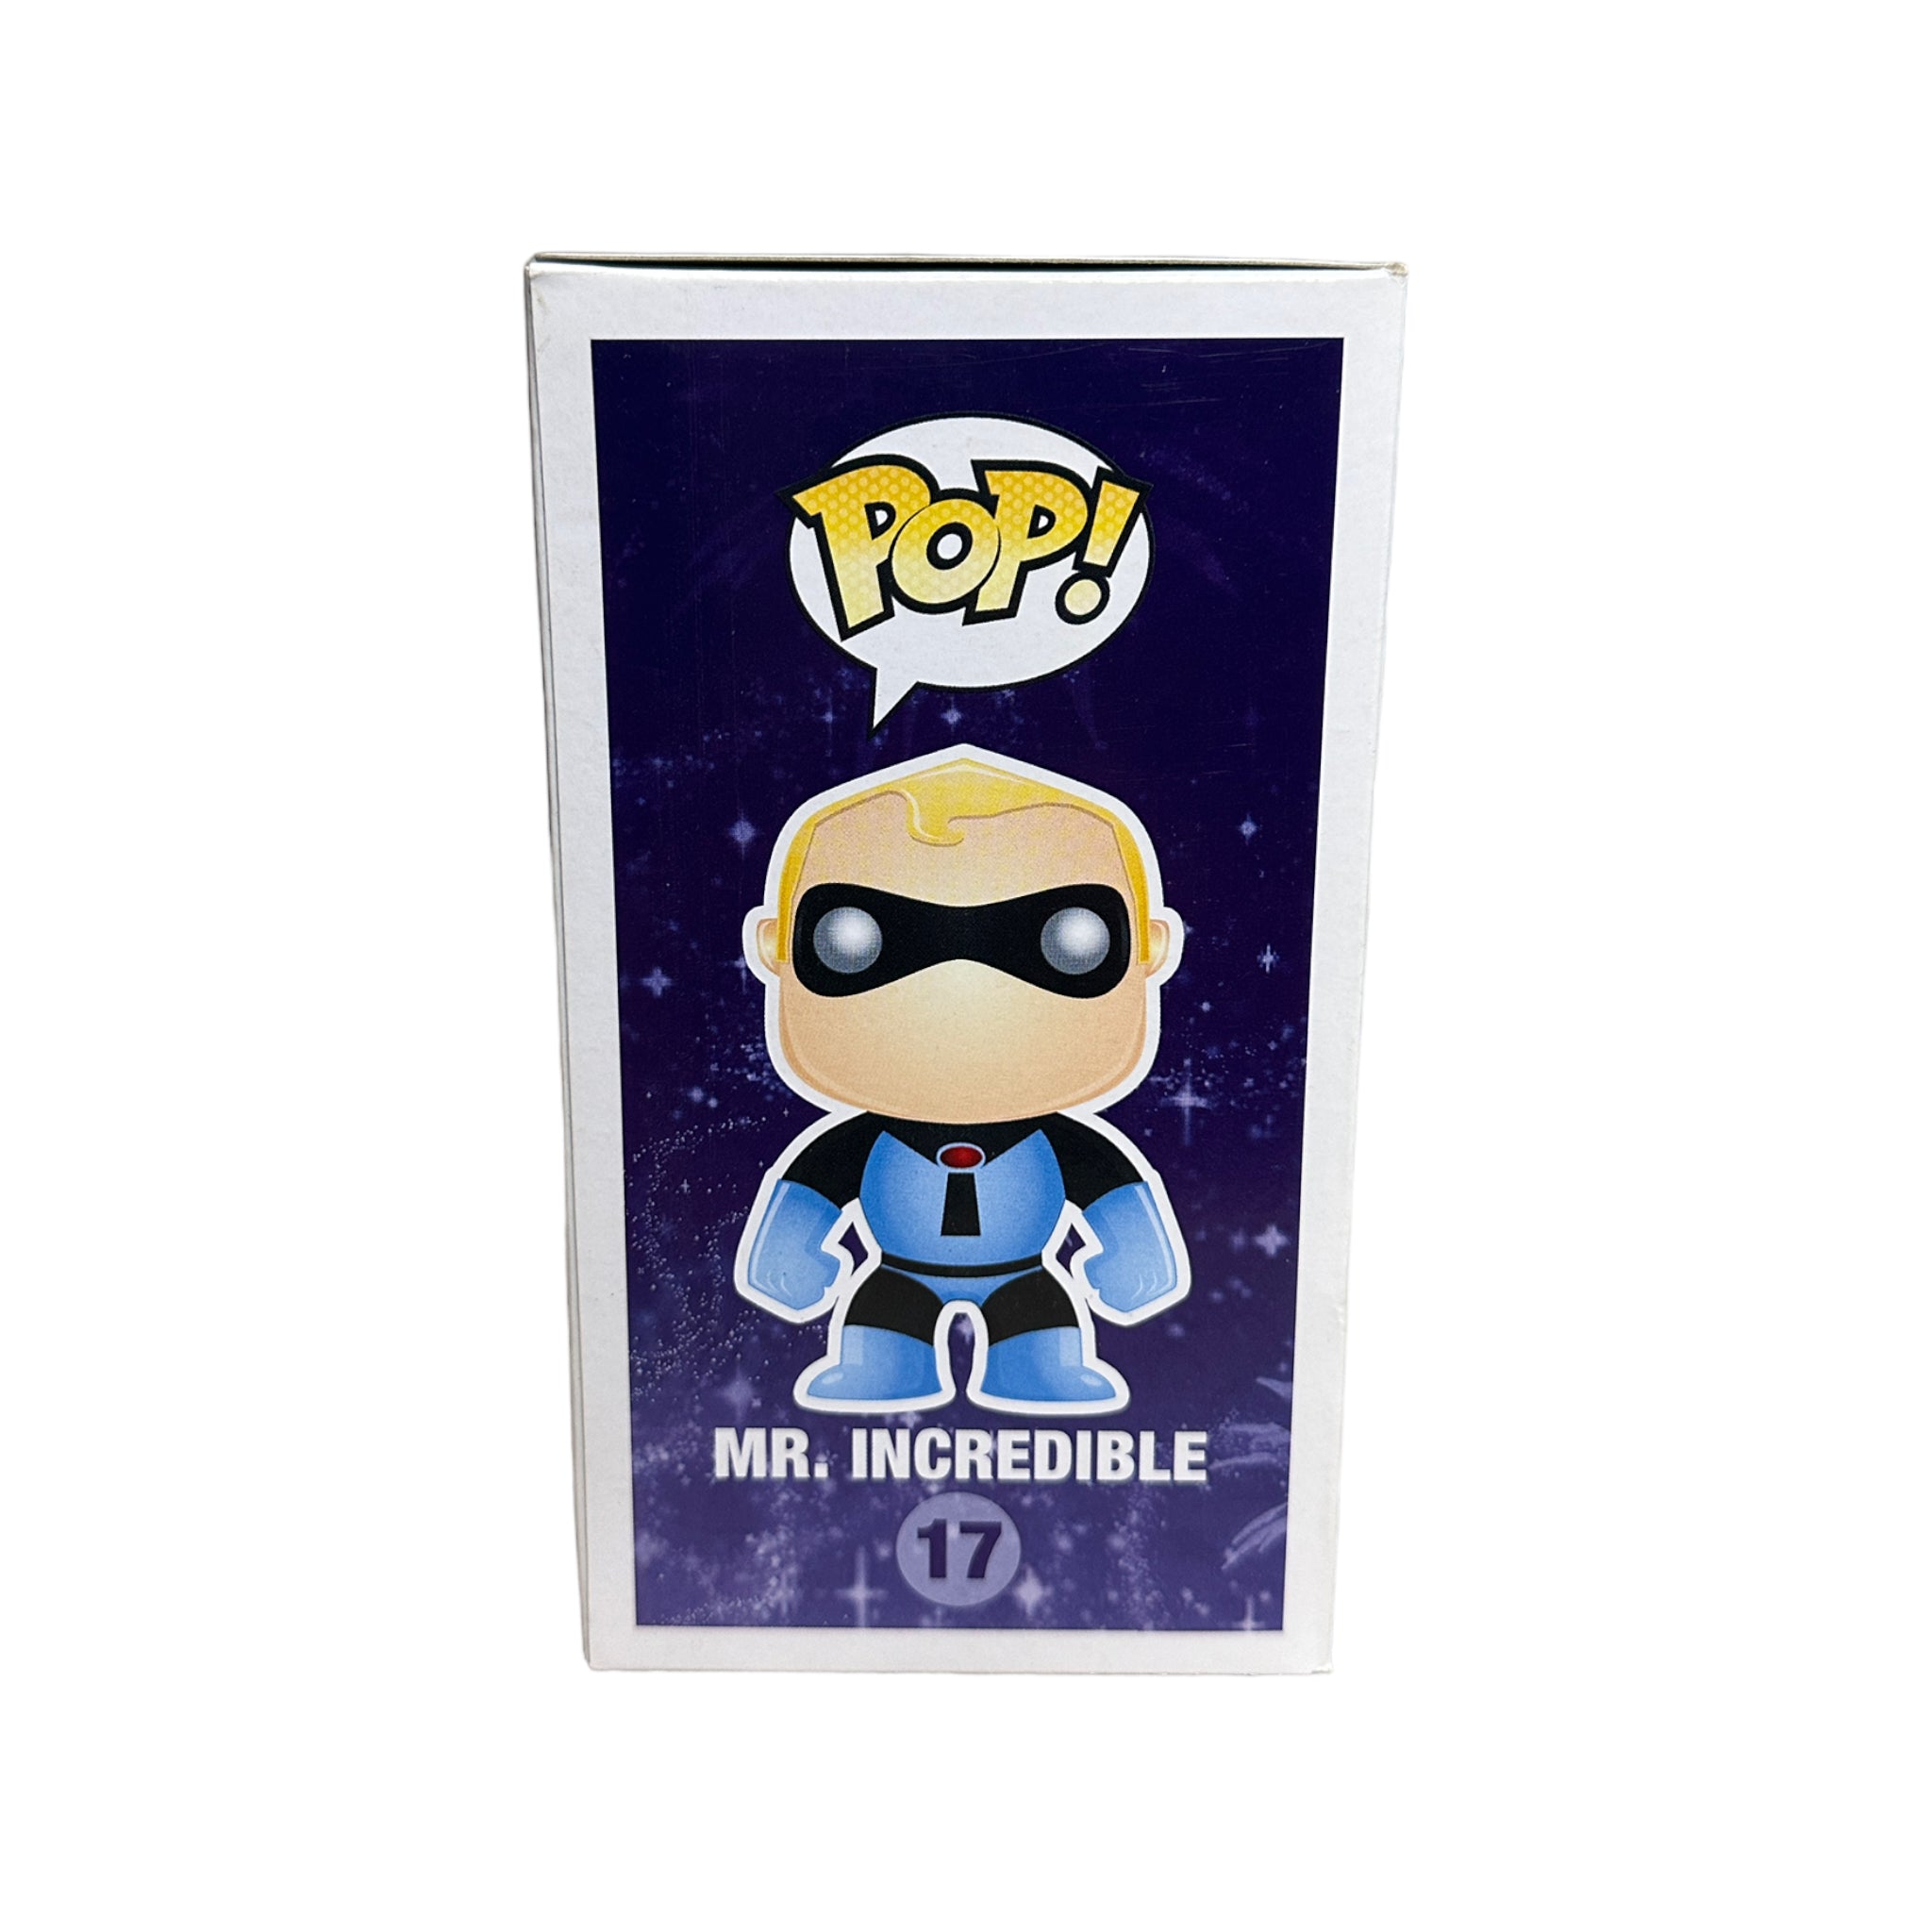 Mr. Incredible #17 (Blue Suit) Funko Pop! - Disney Series 2 - Disney Store SDCC 2011 Exclusive LE480 Pcs - Condition 7.5/10